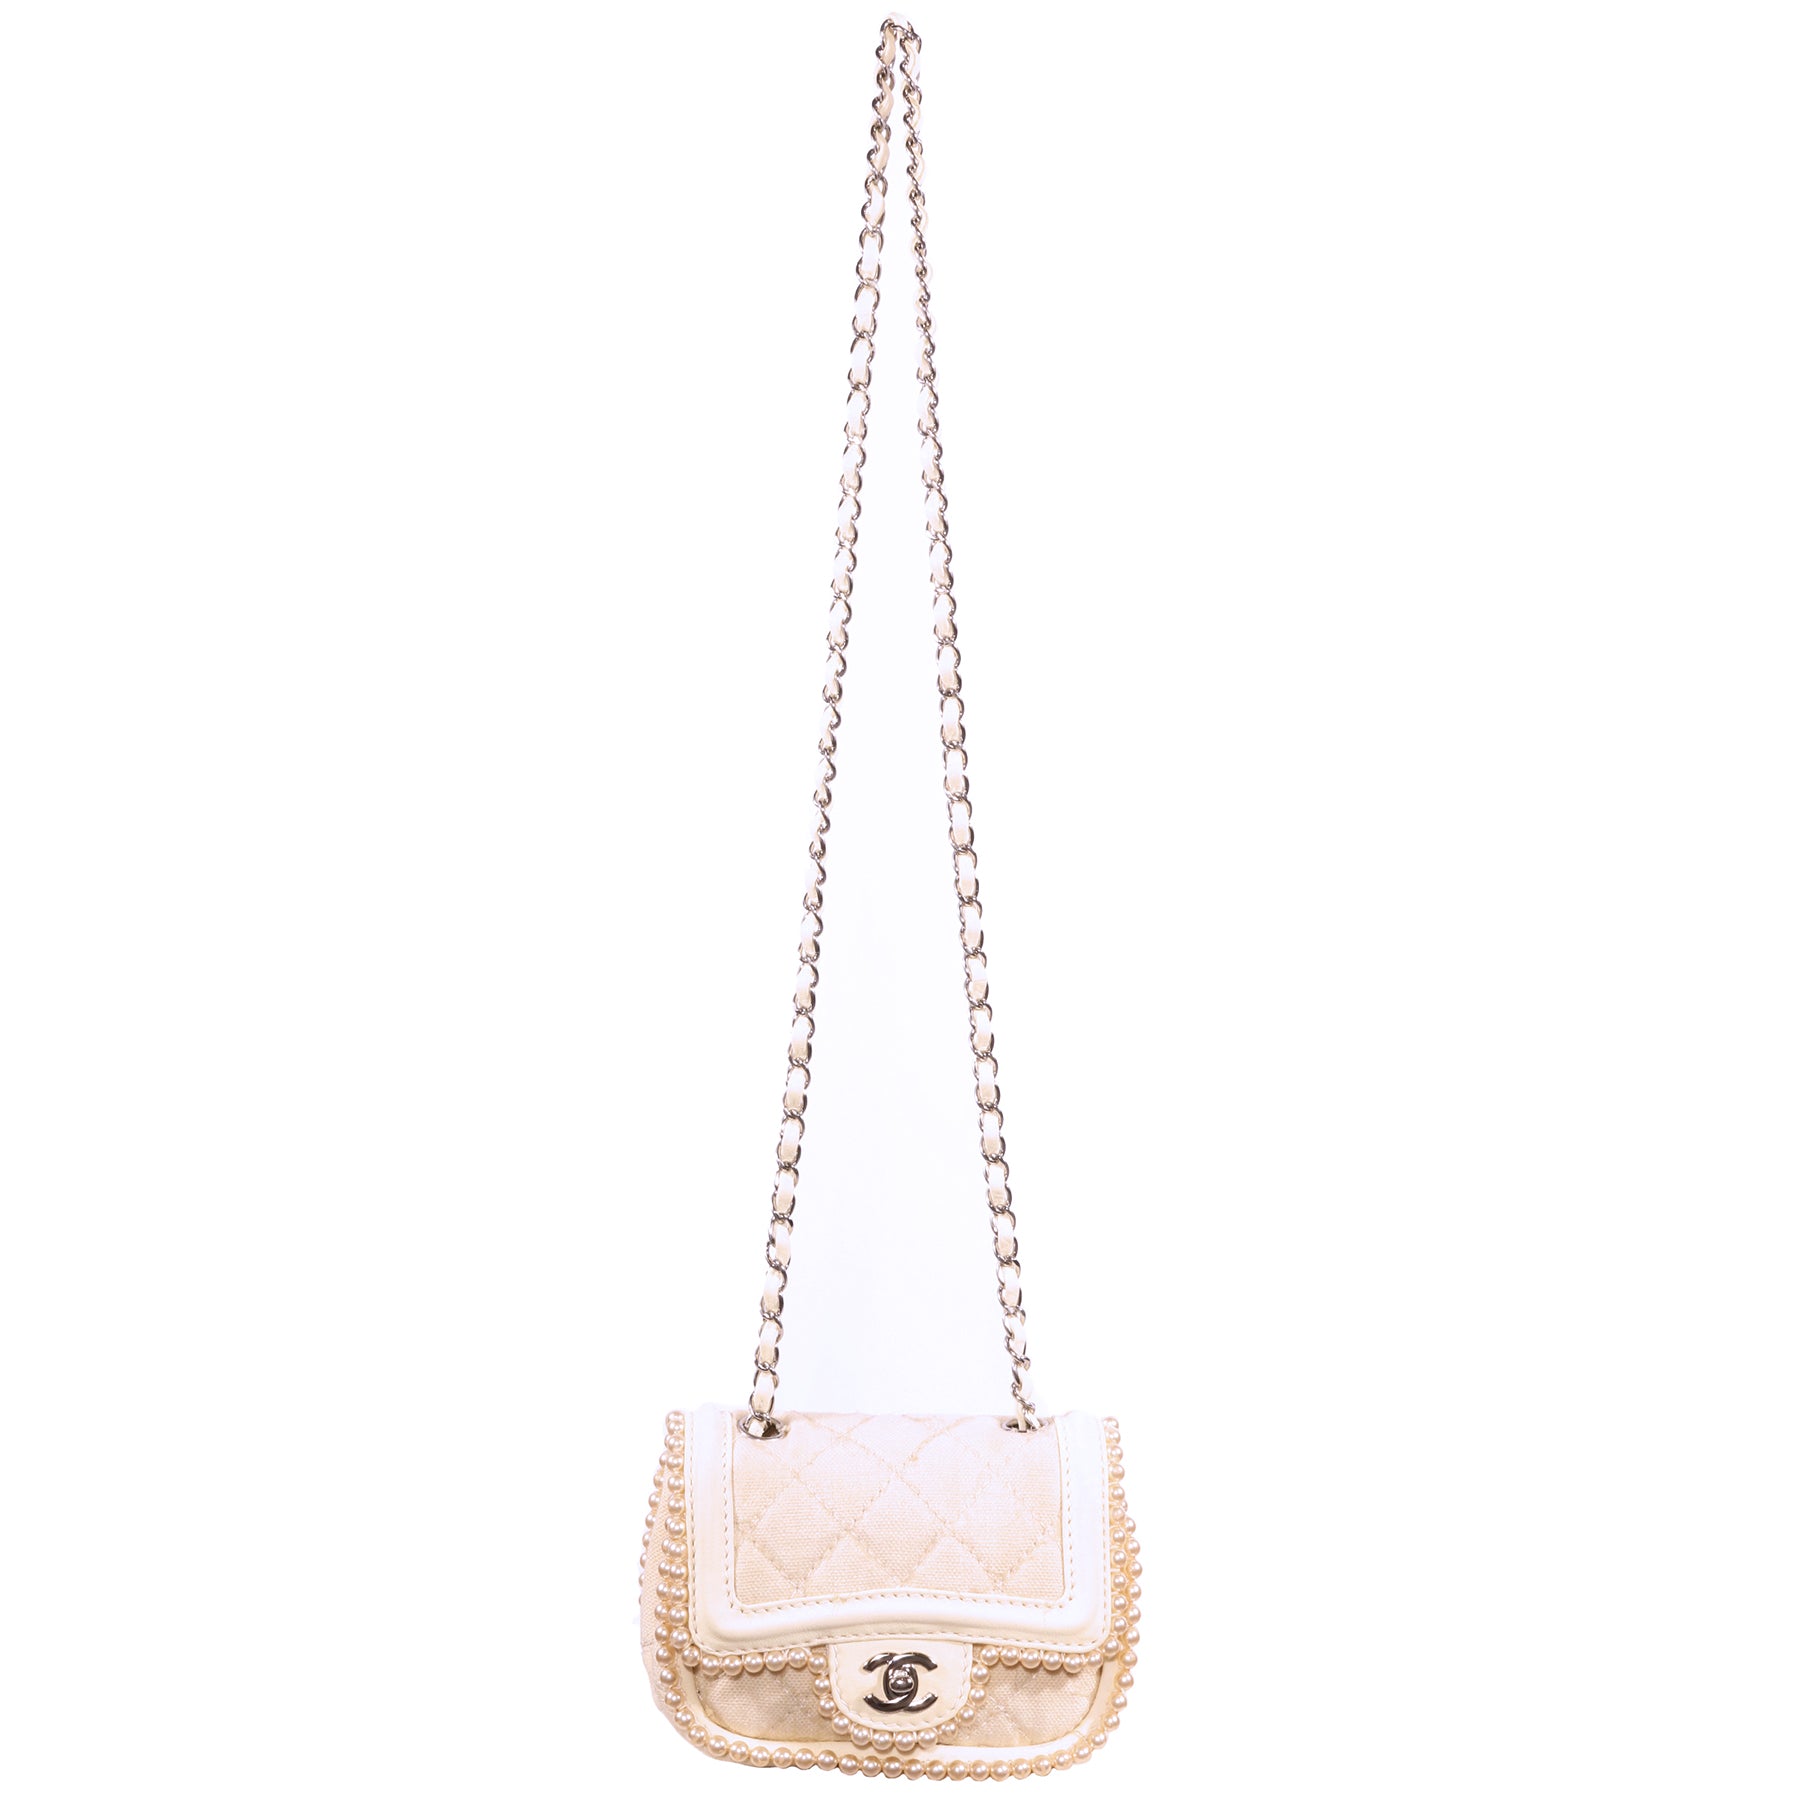 white chanel pearl bag strap